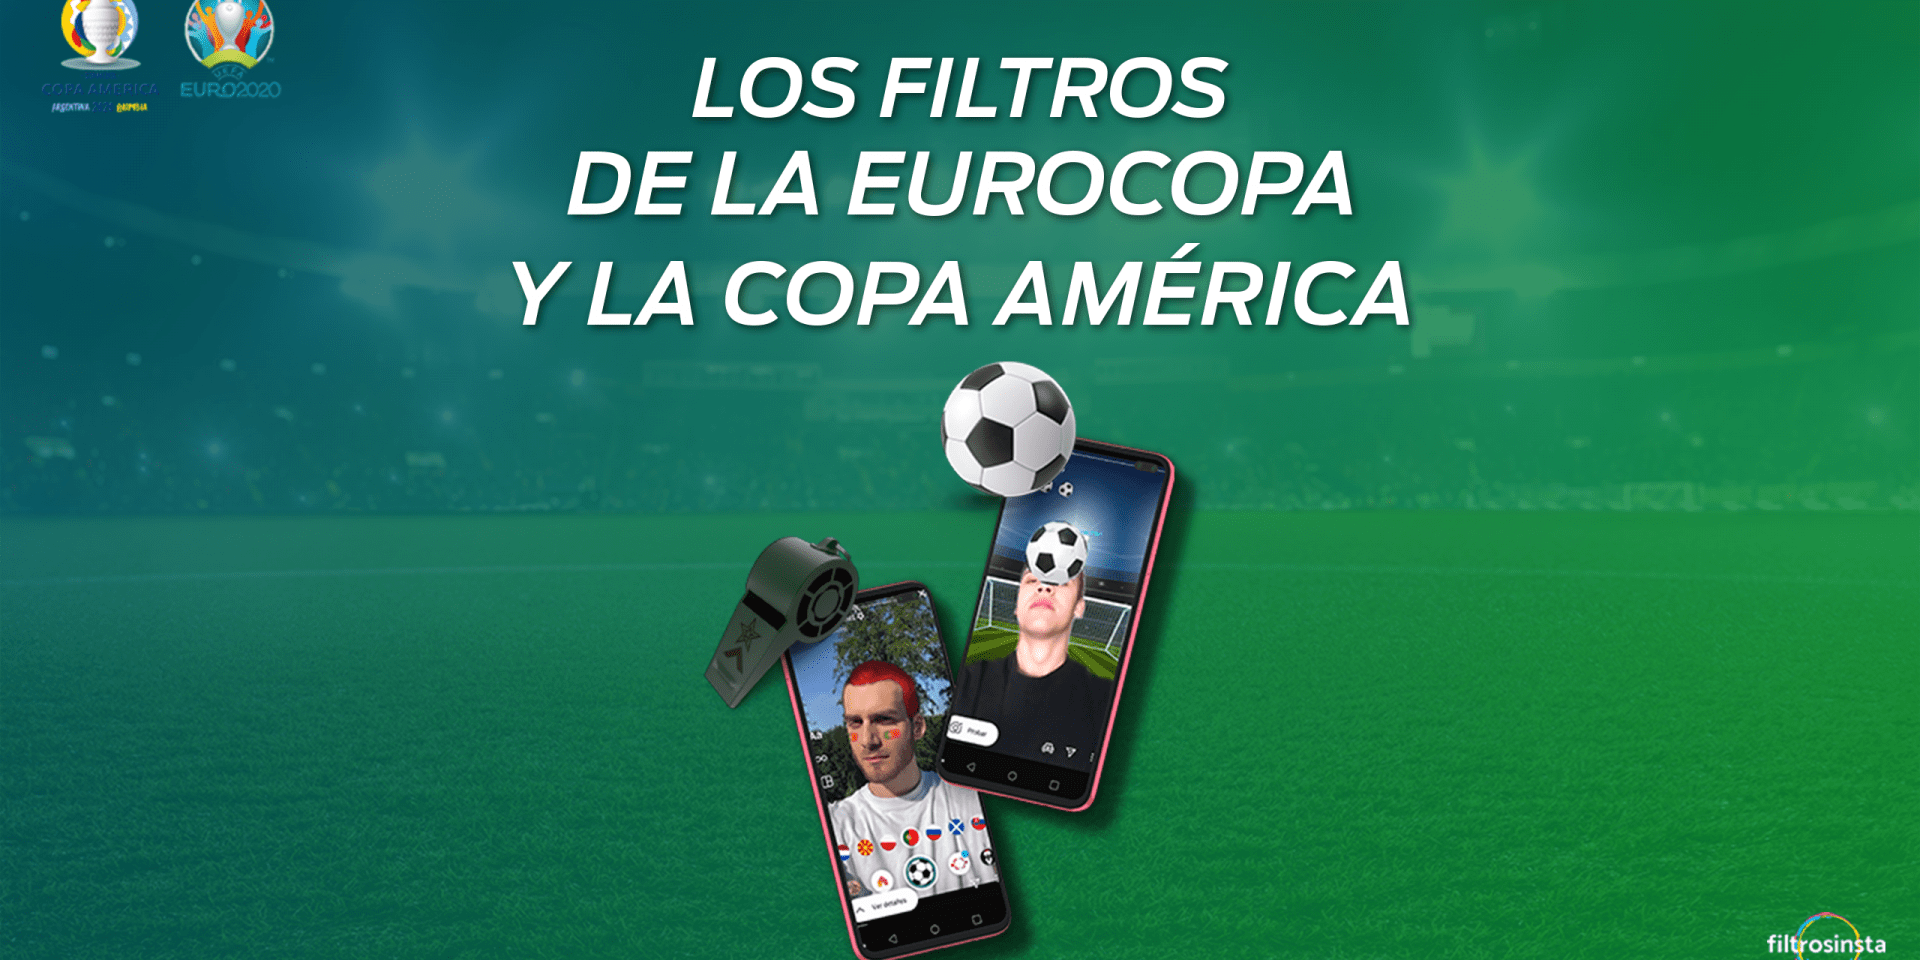 Los mejores filtros de la Eurocopa y la Copa América